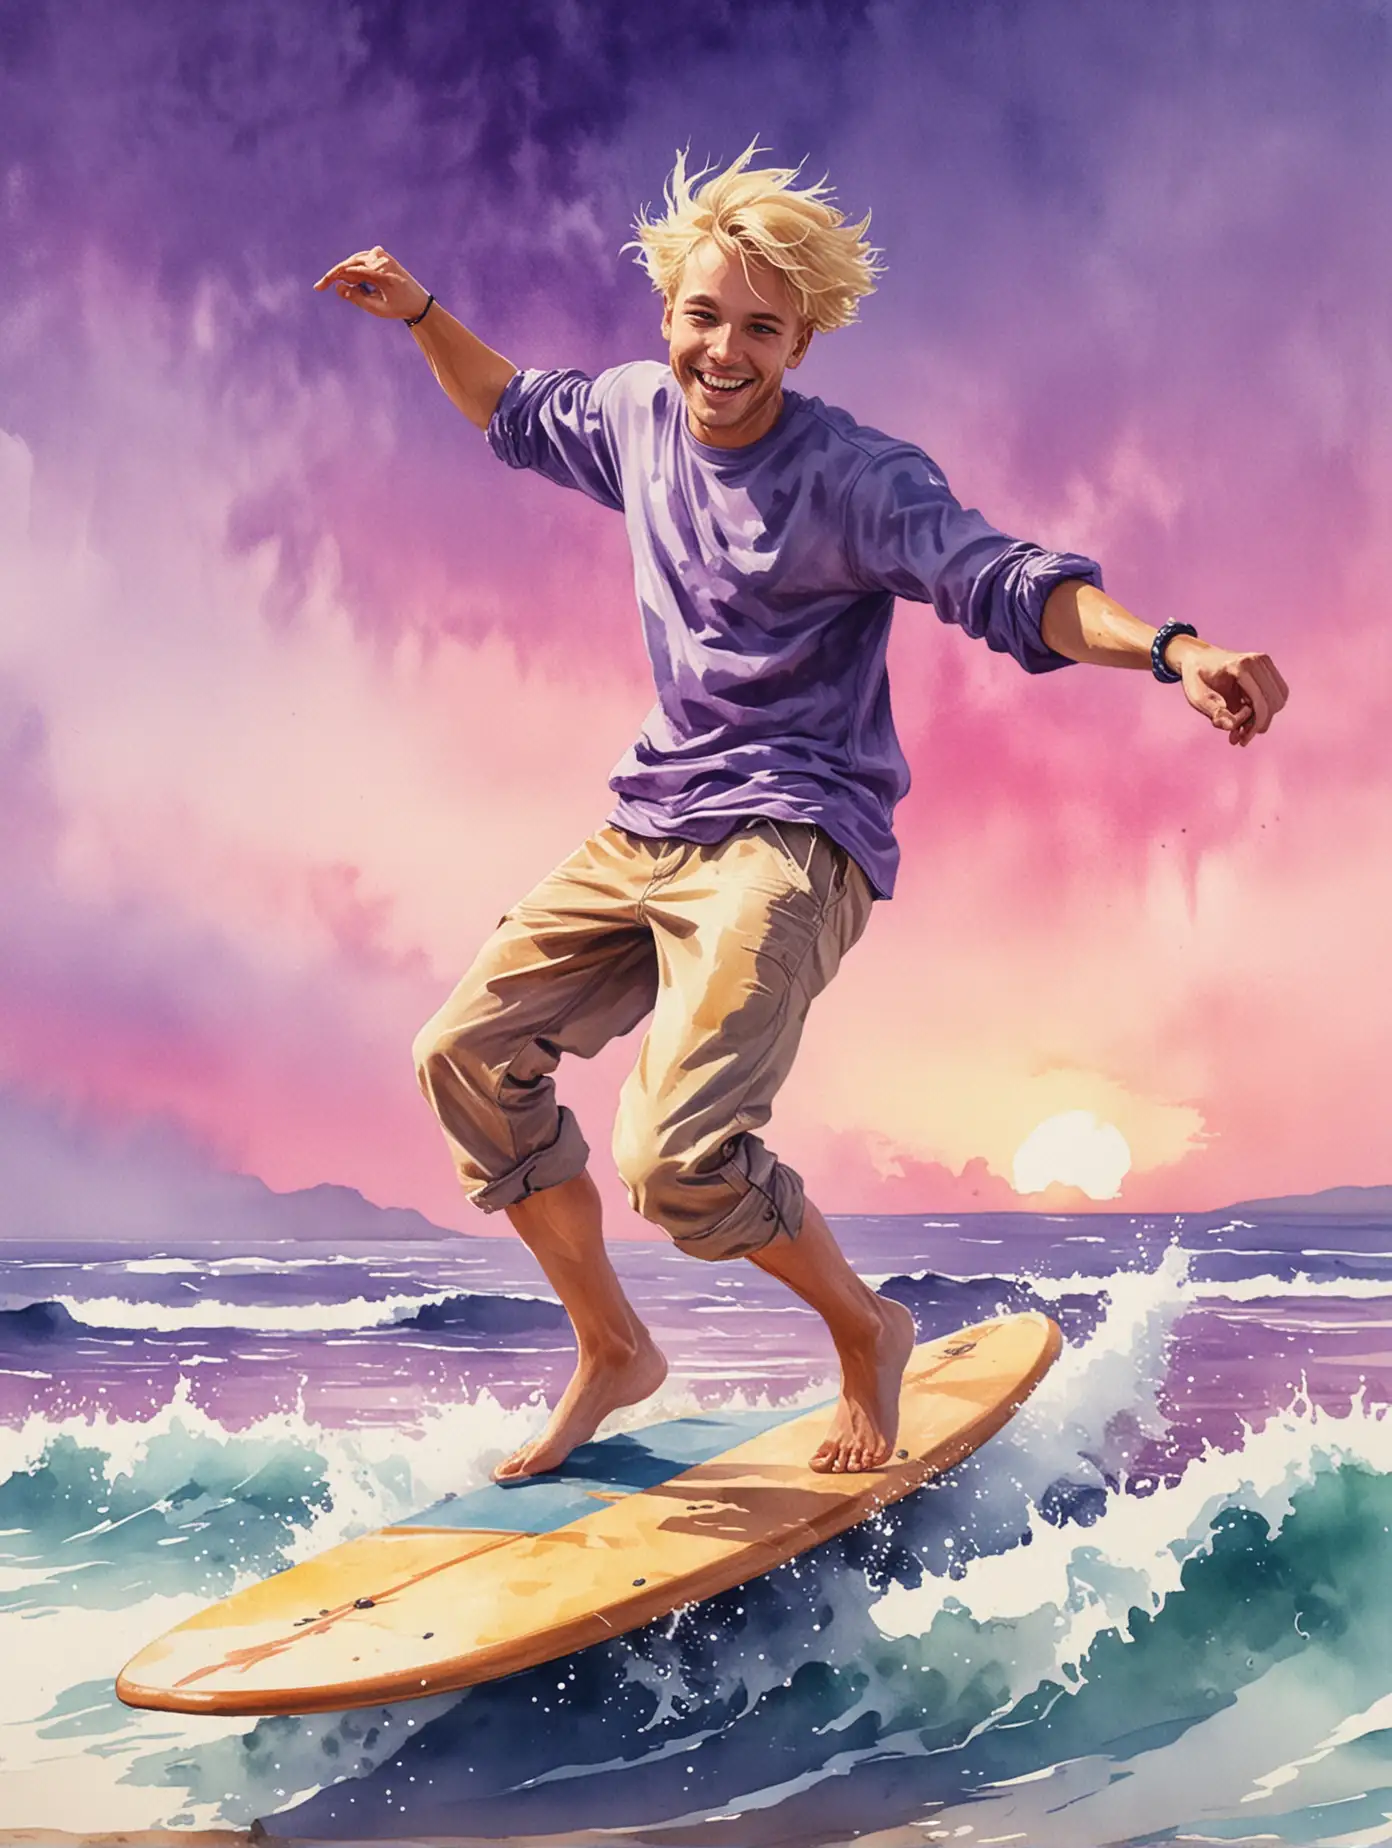 Energetic Blonde Break Dancing Surfer in Watercolor Painting